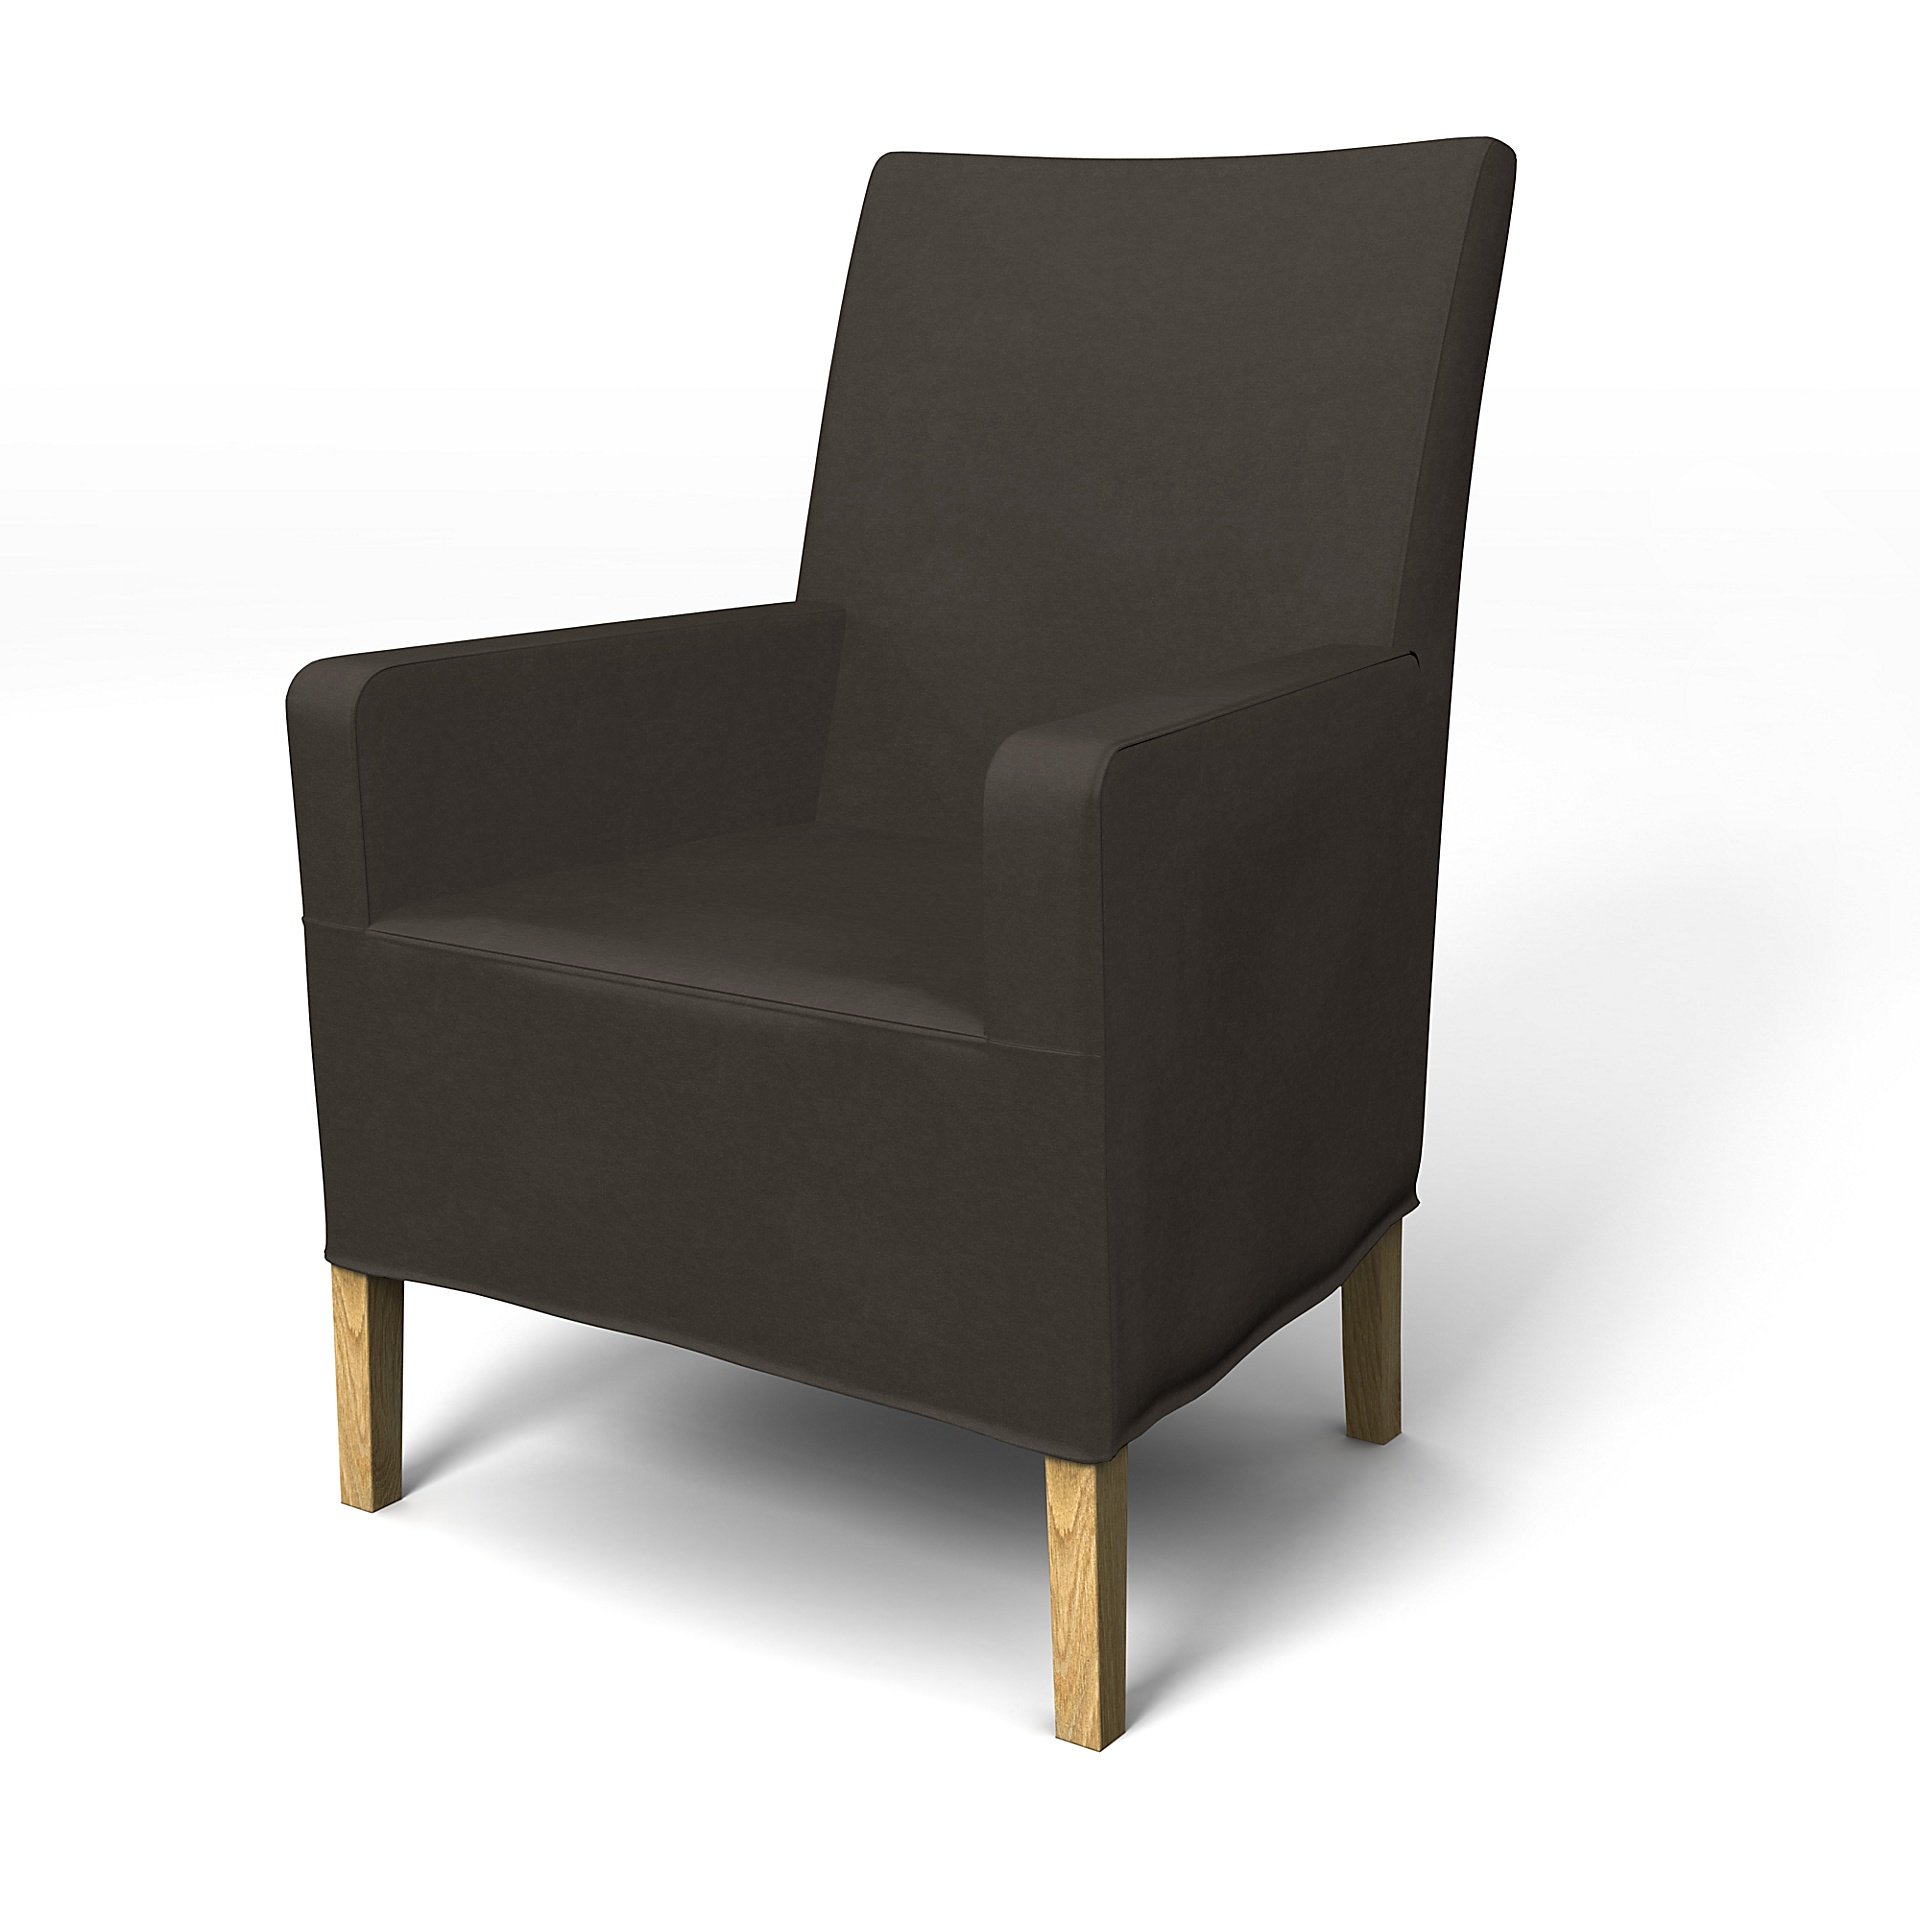 IKEA - Henriksdal, Chair cover w/ armrest, medium length skirt, Licorice, Velvet - Bemz